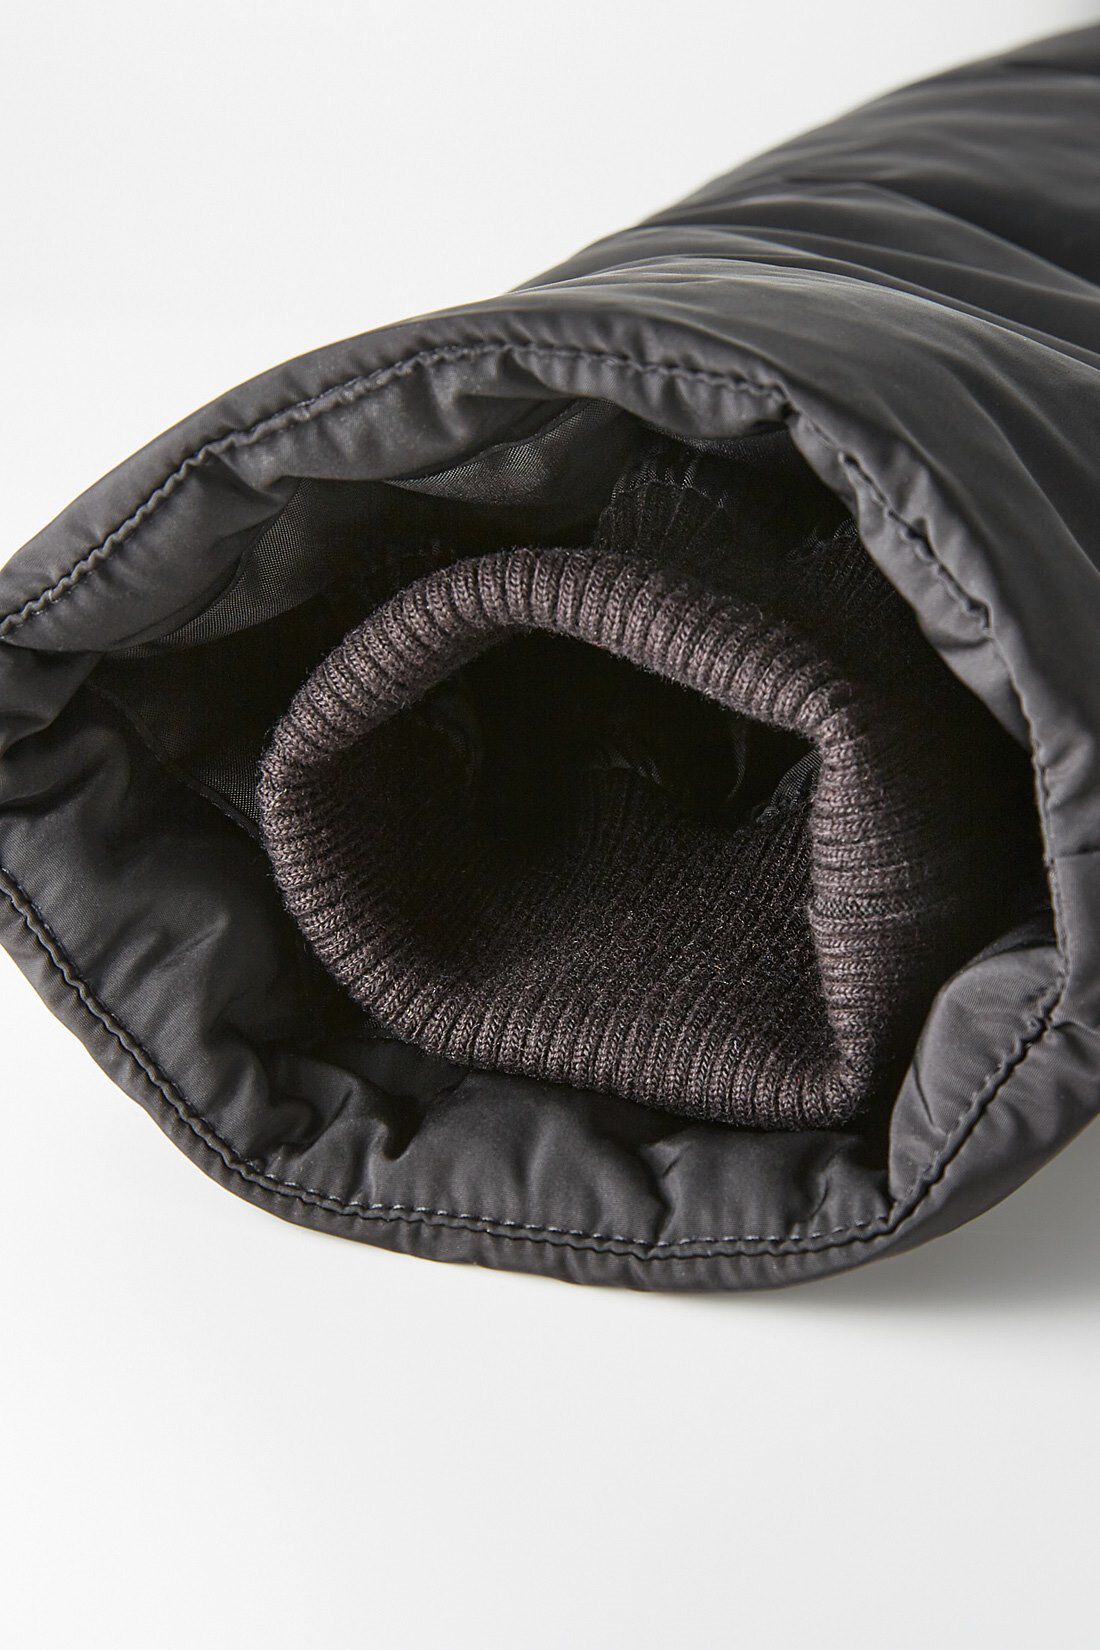 IEDIT|IEDIT[イディット]　福田麻琴さんコラボ　サステナブル素材で未来にやさしい　女っぷりが上がる中わたミディコート〈ブラック〉|袖口は隠れリブ仕様で、暖か&すっきり見え。